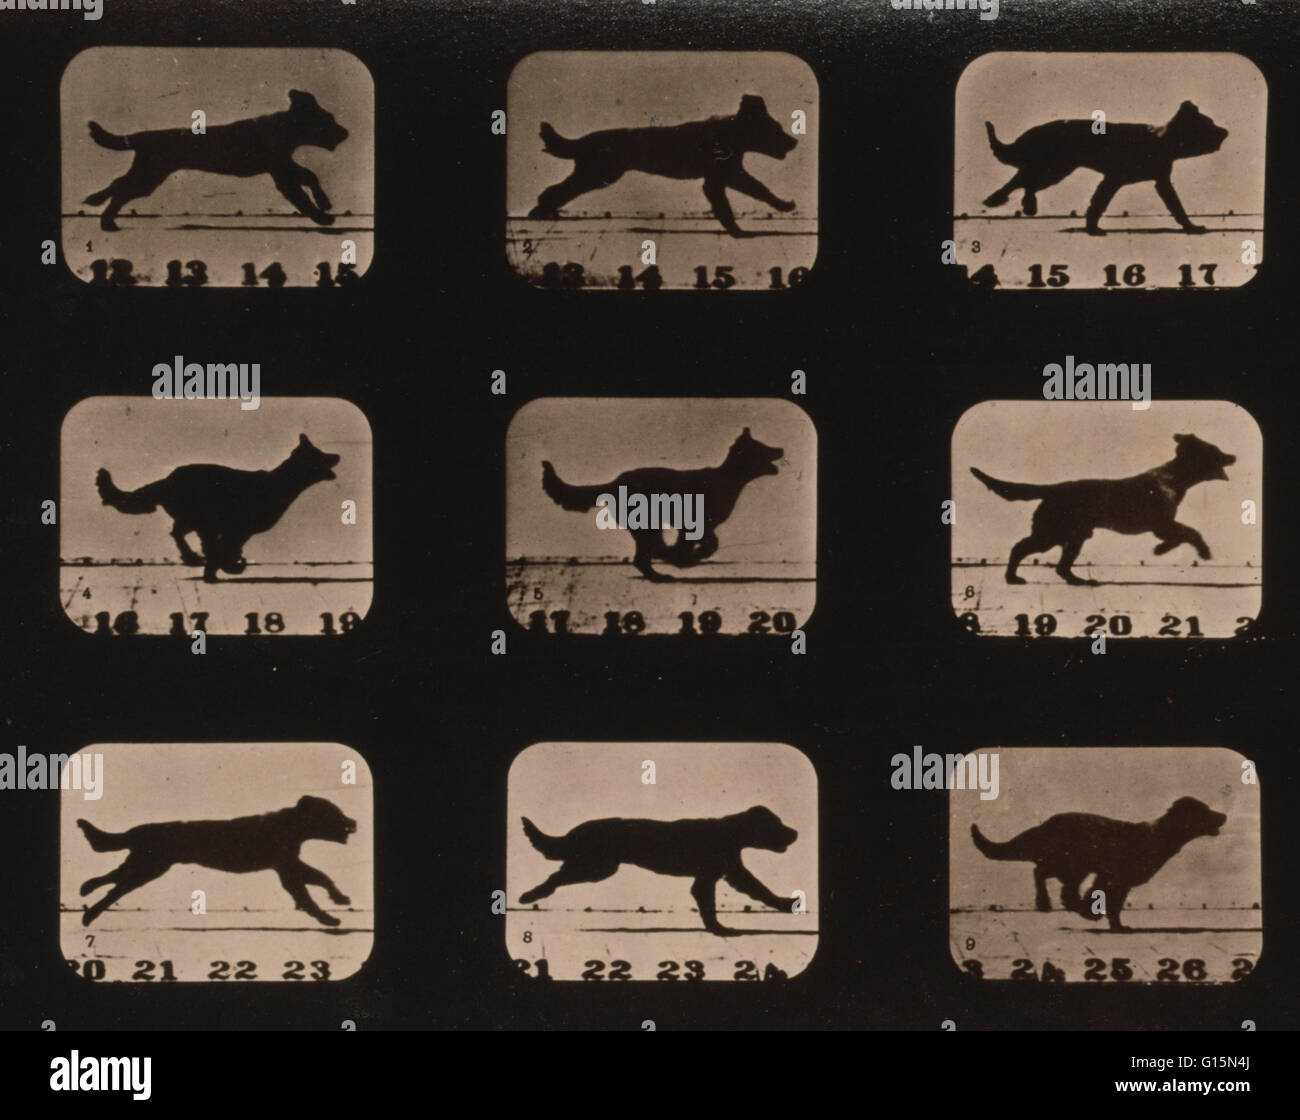 Muybridge tierische Fortbewegung, Hund ausführen, 1881. Foto zeigt 9 aufeinanderfolgende Bildern eines Hundes ausgeführt. Eadweard James Muybridge (9. April 1830 - 8. Mai 1904) war ein englischer Fotograf wichtig für seine Pionierarbeit in fotografischen Studien der Bewegung Stockfoto